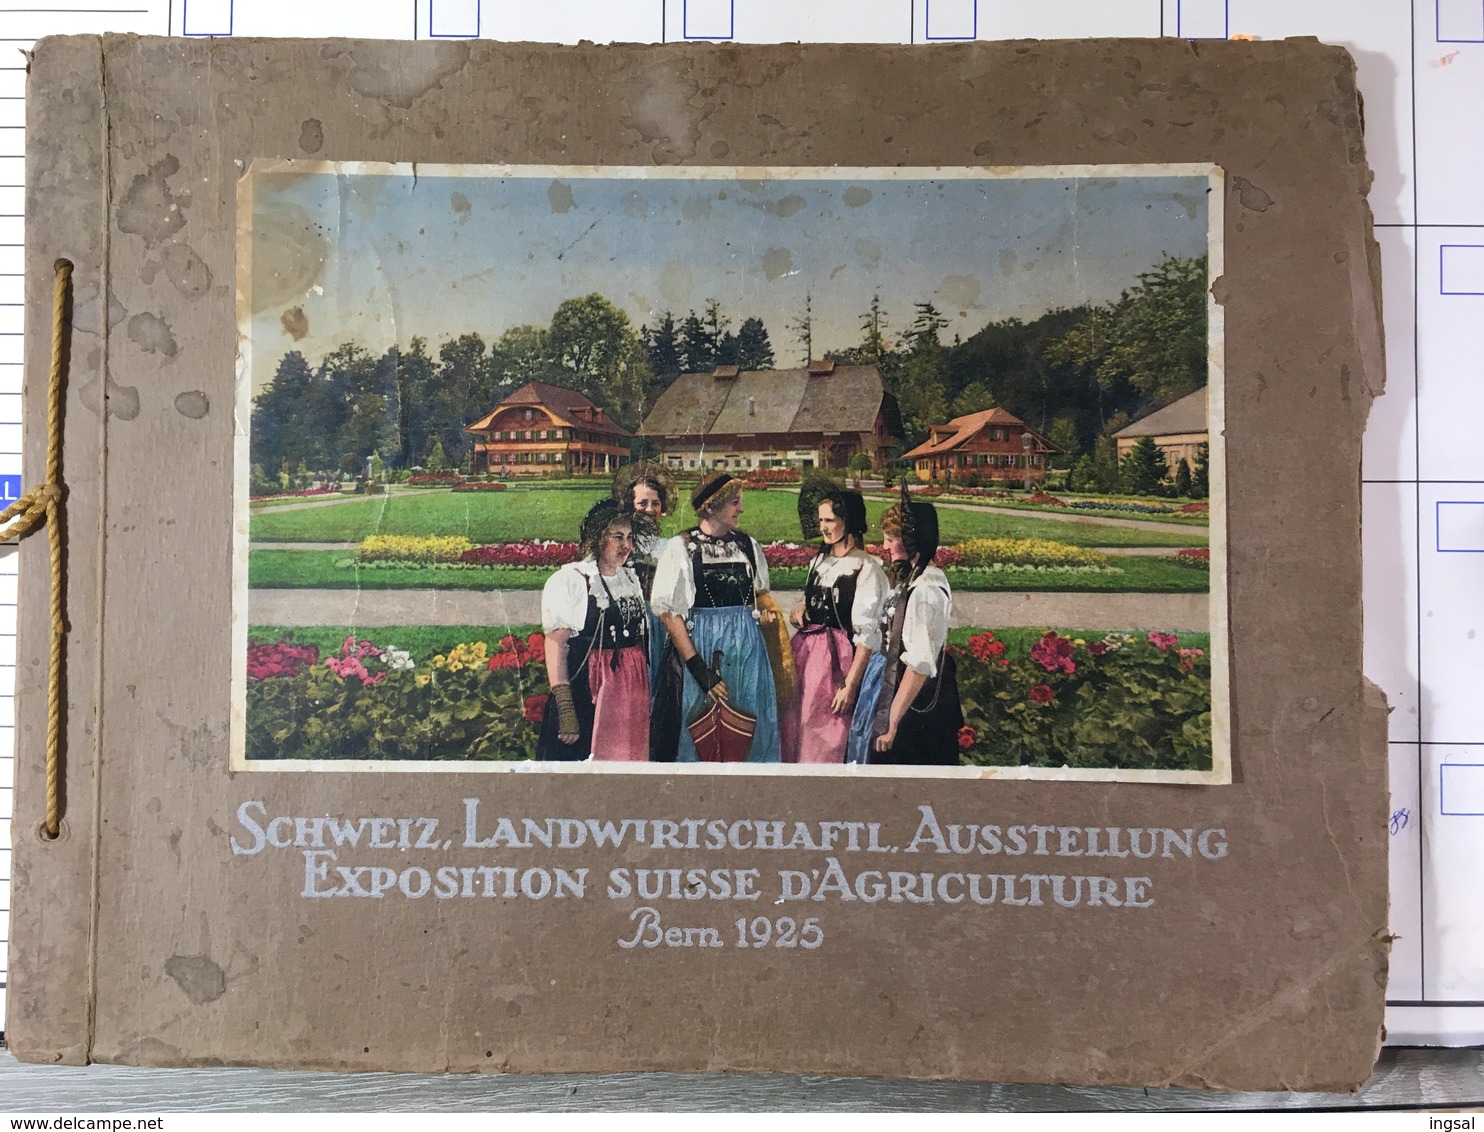 Schweiz, Landwirtschaftl, Ausstellung-Exposition Suisse D’Agriculture. Bern 1925 - Kataloge